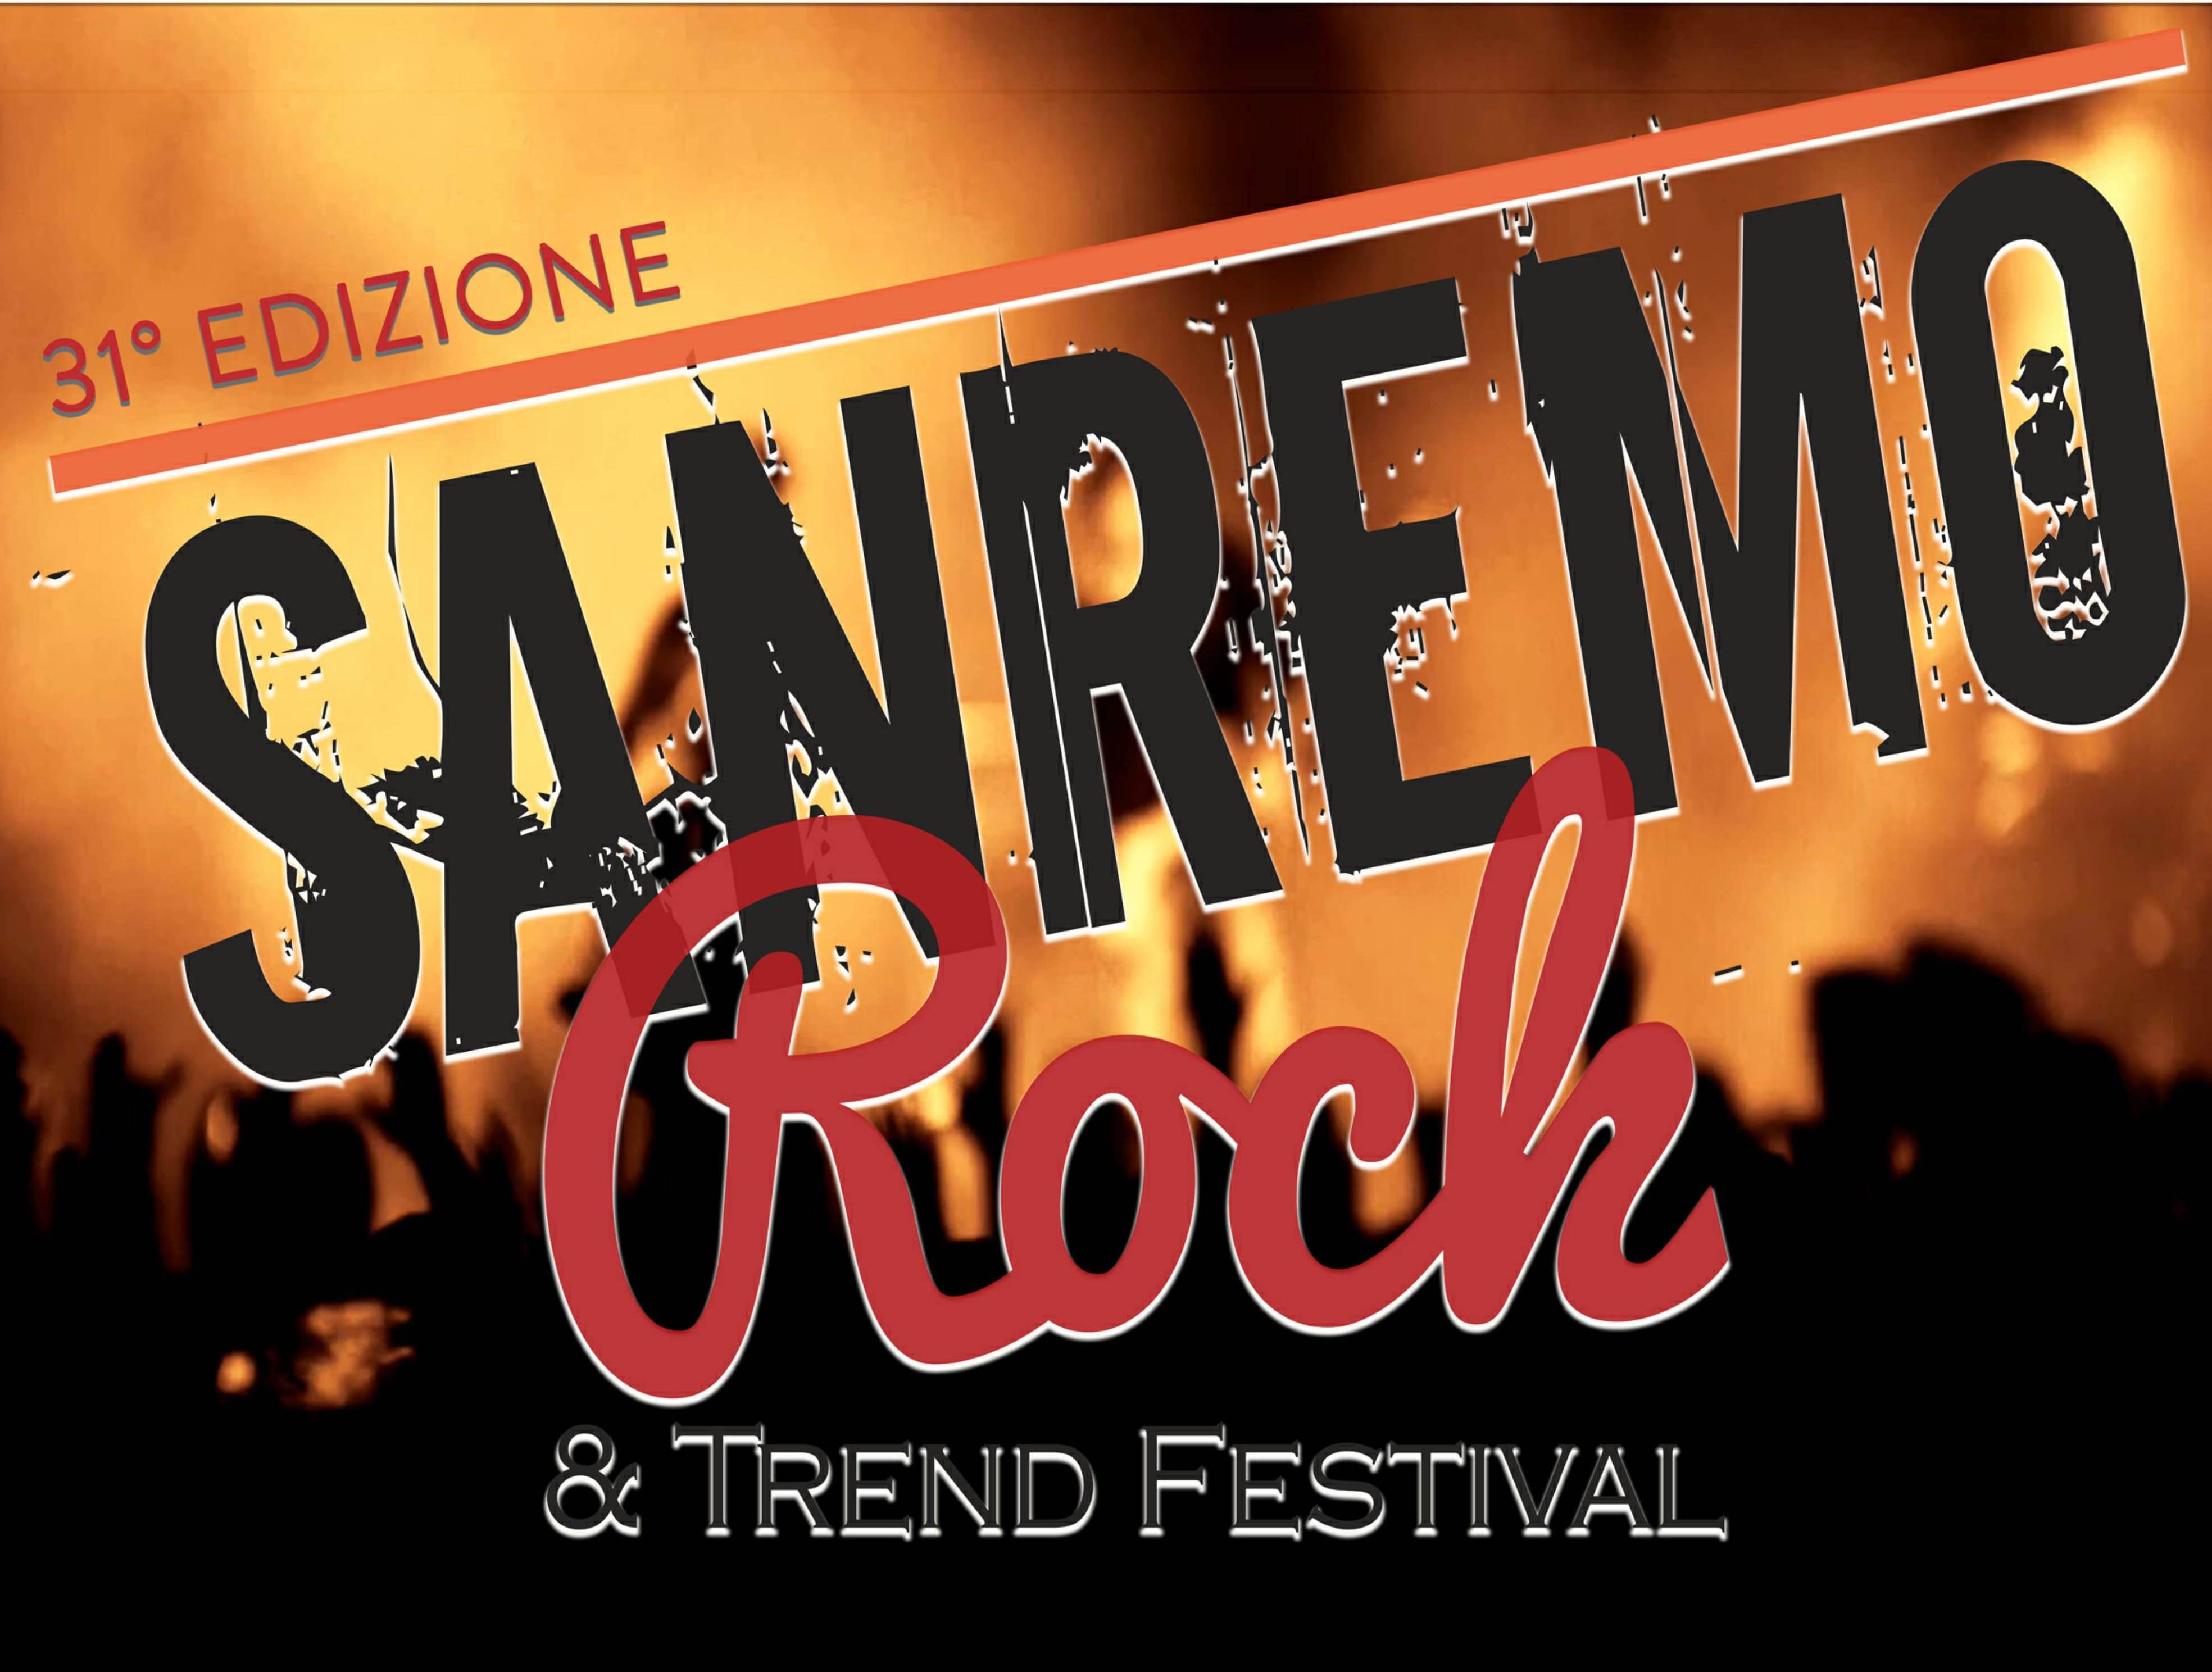 Questa settimana con il Live Tour 2017/18 - 31° SANREMO ROCK & TREND FESTIVAL - selezioni per Lombardia/Liguria, Veneto/Friuli VG, Campania/Basilicata e Piemonte 